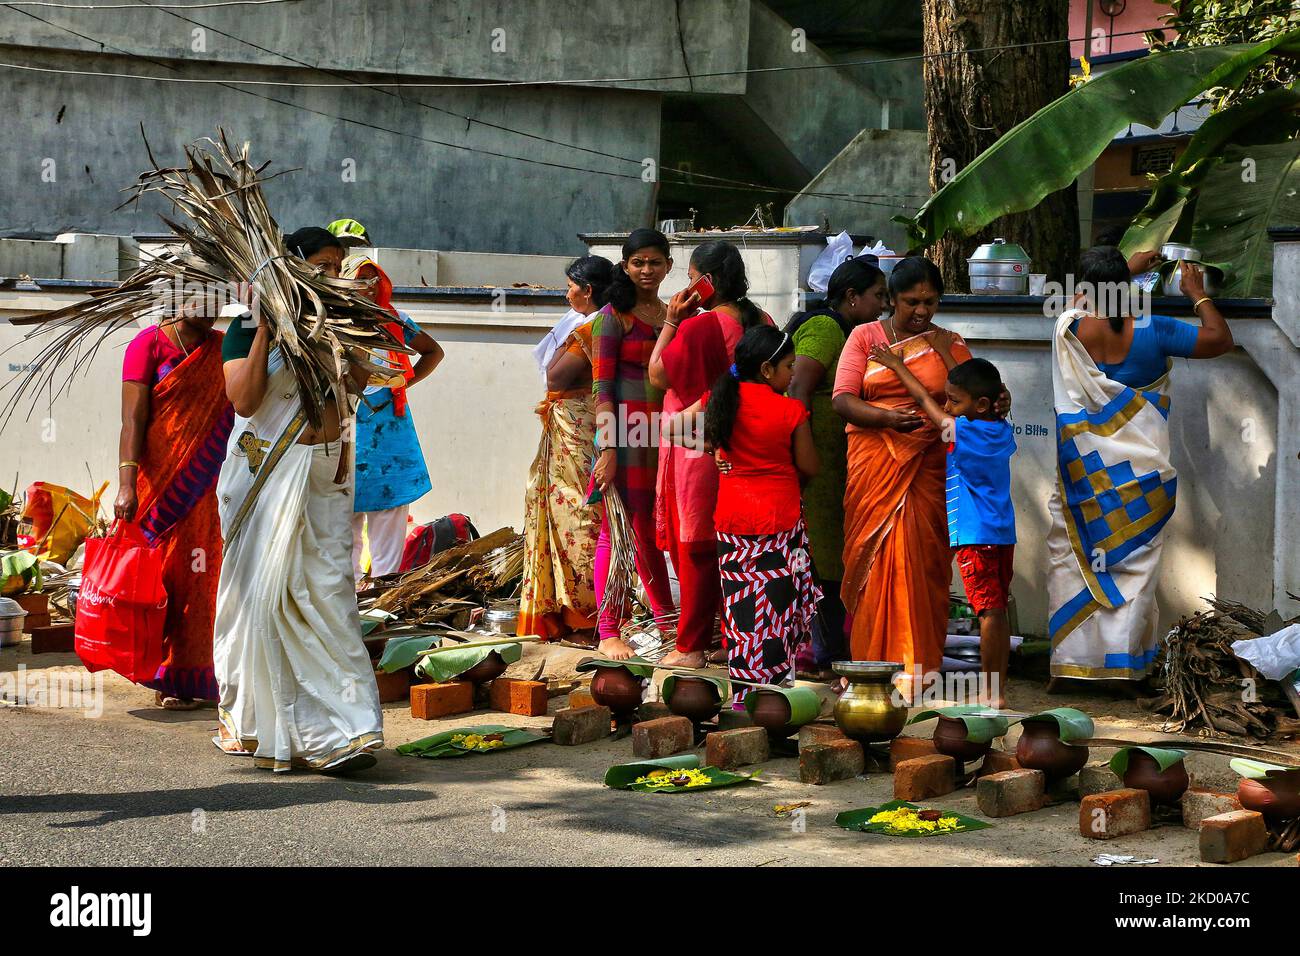 La femme hindoue porte un paquet de gaines de fleurs de noix de coco séchées (kothumbu) qui seront utilisées comme combustible pour un feu lors de la cuisson du pongala pendant le festival Attukal Pongala Mahotsavam dans la ville de Thiruvananthapuram (Trivandrum), Kerala, Inde, sur 19 février 2019. Le festival Attukal Pongala Mahotsavam est célébré chaque année par des millions de femmes hindoues. Au cours de ce festival, les femmes préparent Pongala (riz cuisiné avec des jaggery, ghee, noix de coco et d'autres ingrédients) dans le ouvert dans de petits pots à comme une offrande à la déesse Attukal Devi (populairement connue sous le nom d'Attukal Amma) qui est censée remplir les souhaits de son de Banque D'Images